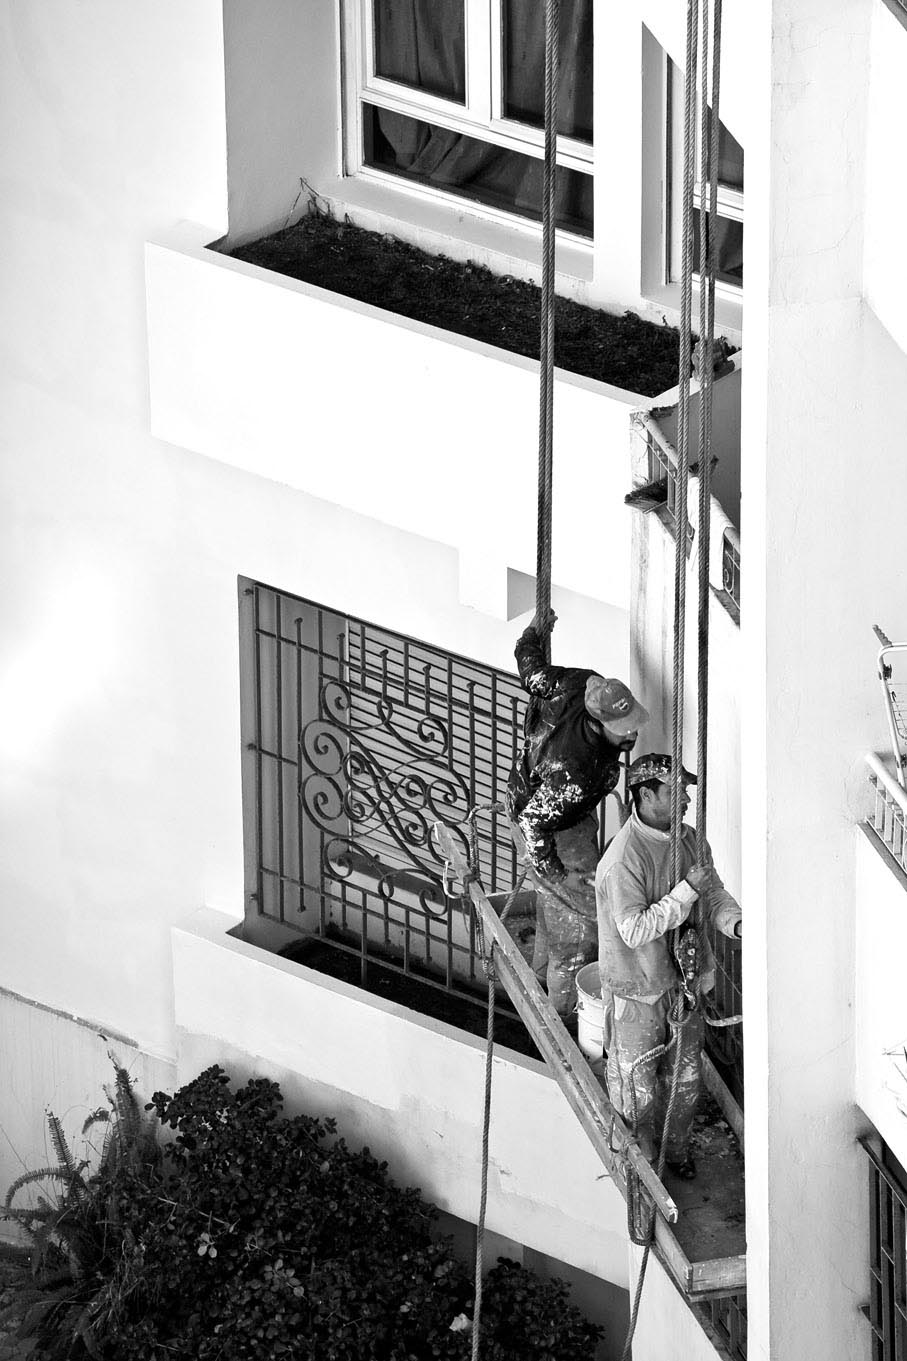 /Guewen/galeries/public/Voyages/Maroc/Casablanca/Casablanca_rue_2008/Casa_rue_021.jpg